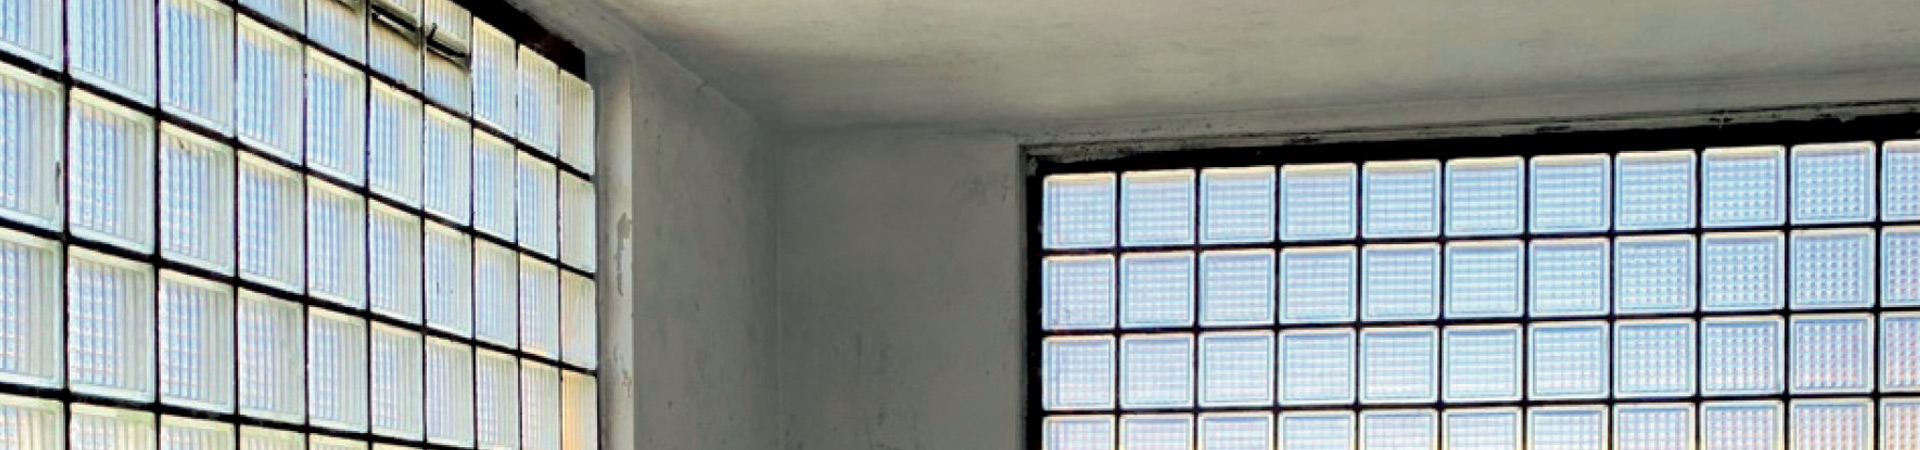 Graue Wand mit historischen Fenstern aus Glasbausteinen